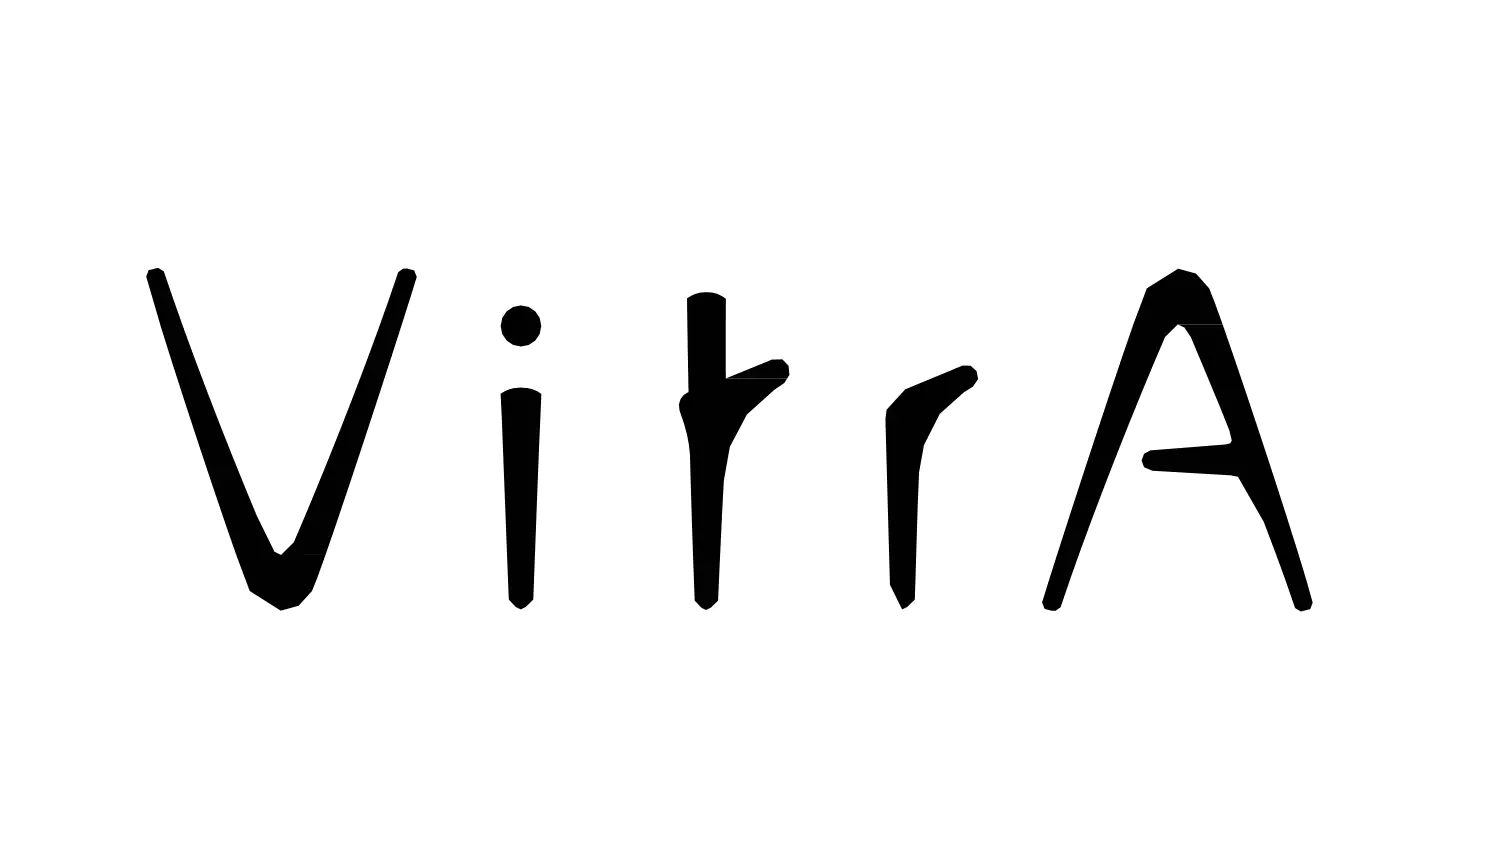 VitrA logo